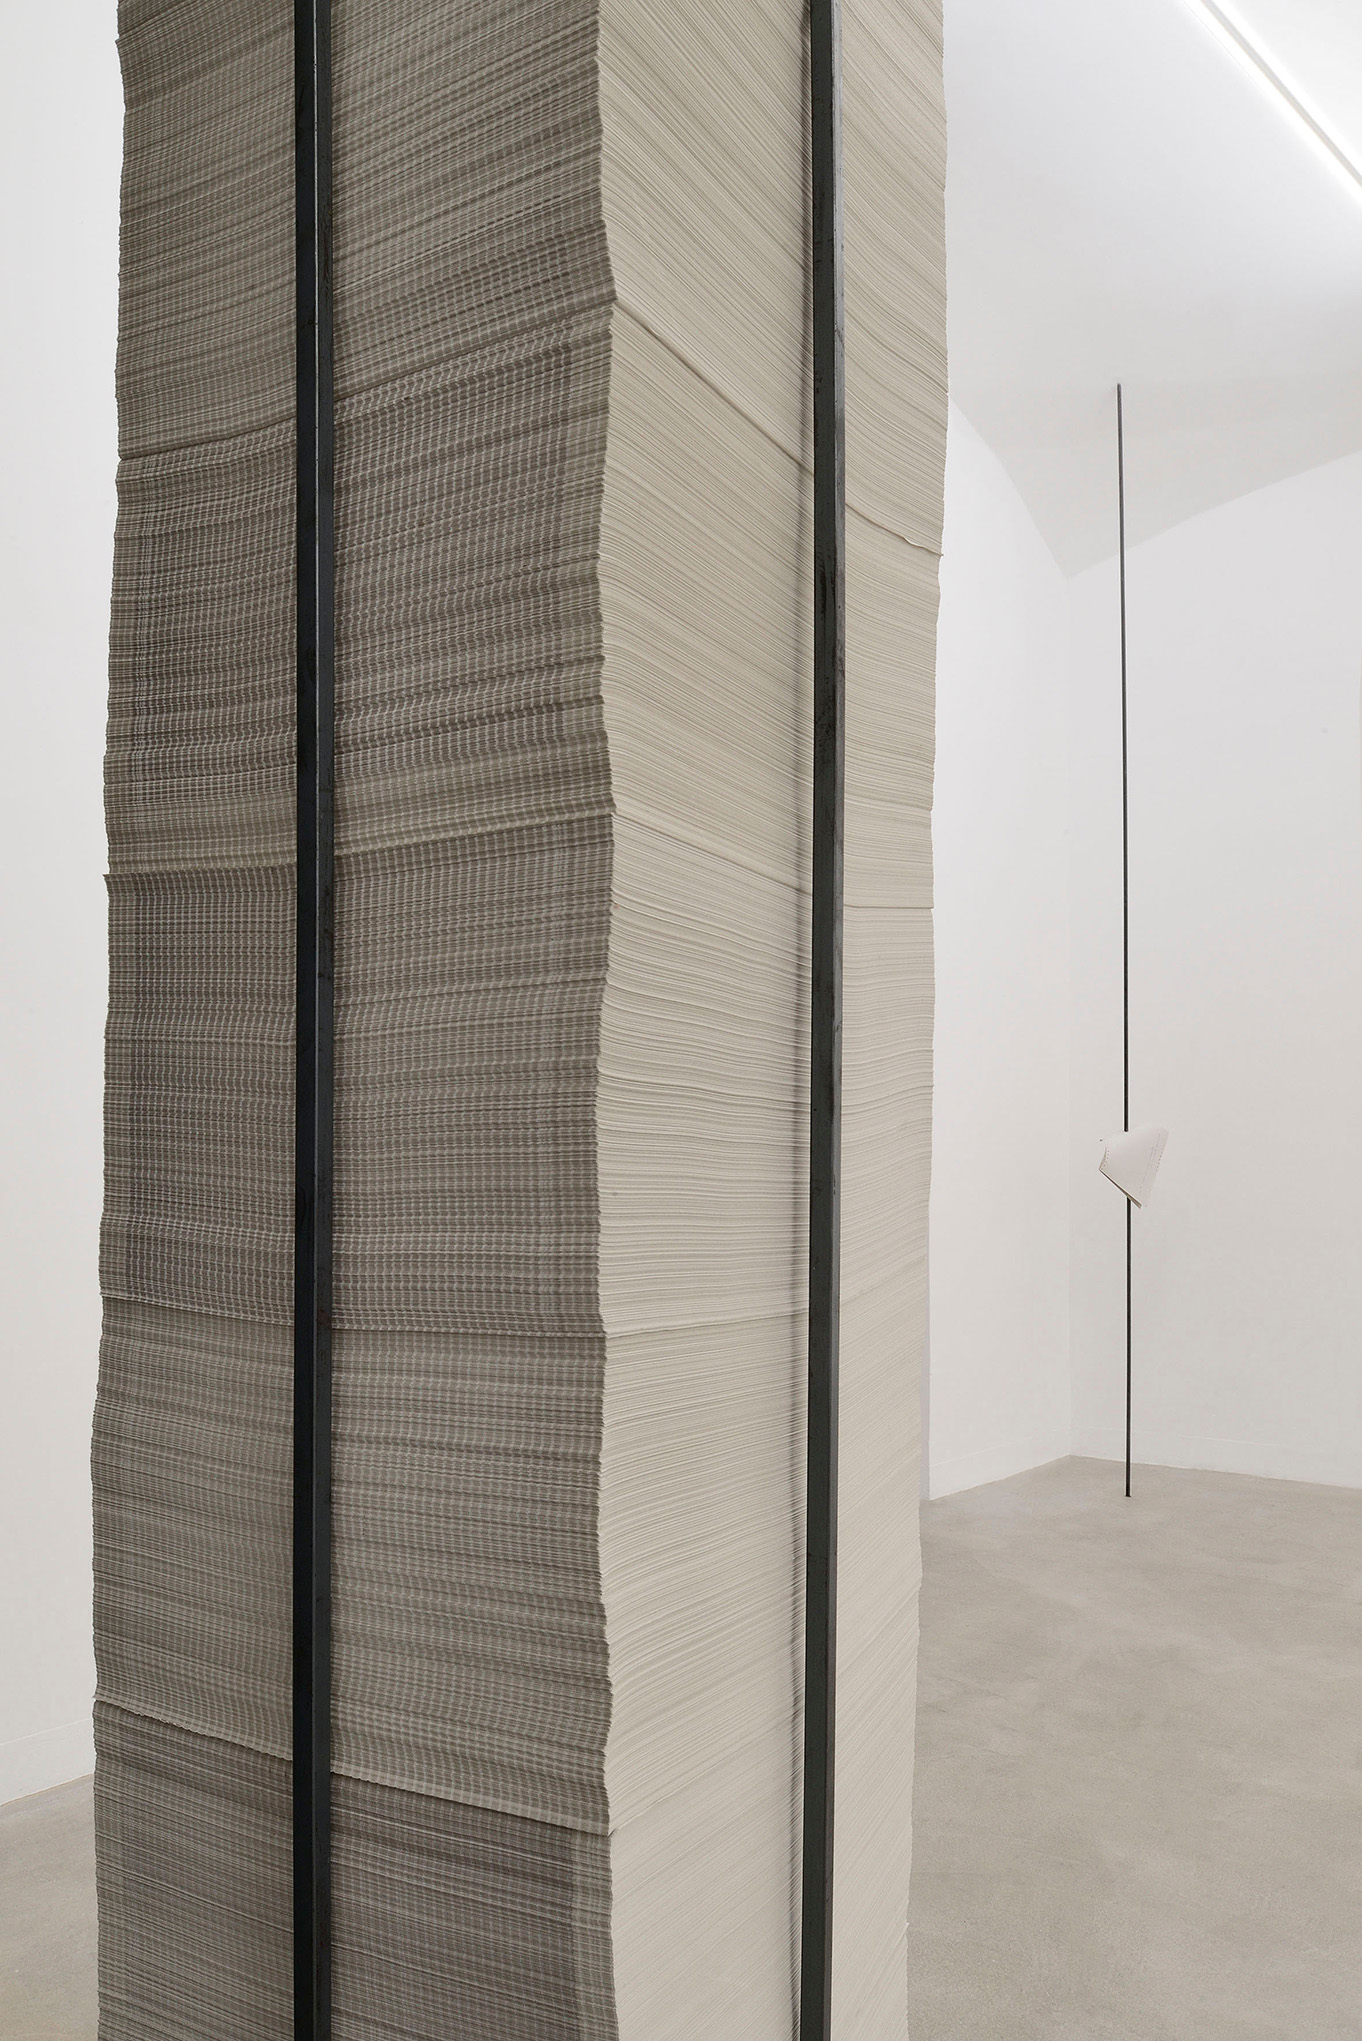 Giulia Marchi, Una pietra sopra, 2022, exhibition view, Matèria, Roma. Courtesy Matèria, Roma. Foto Roberto Apa